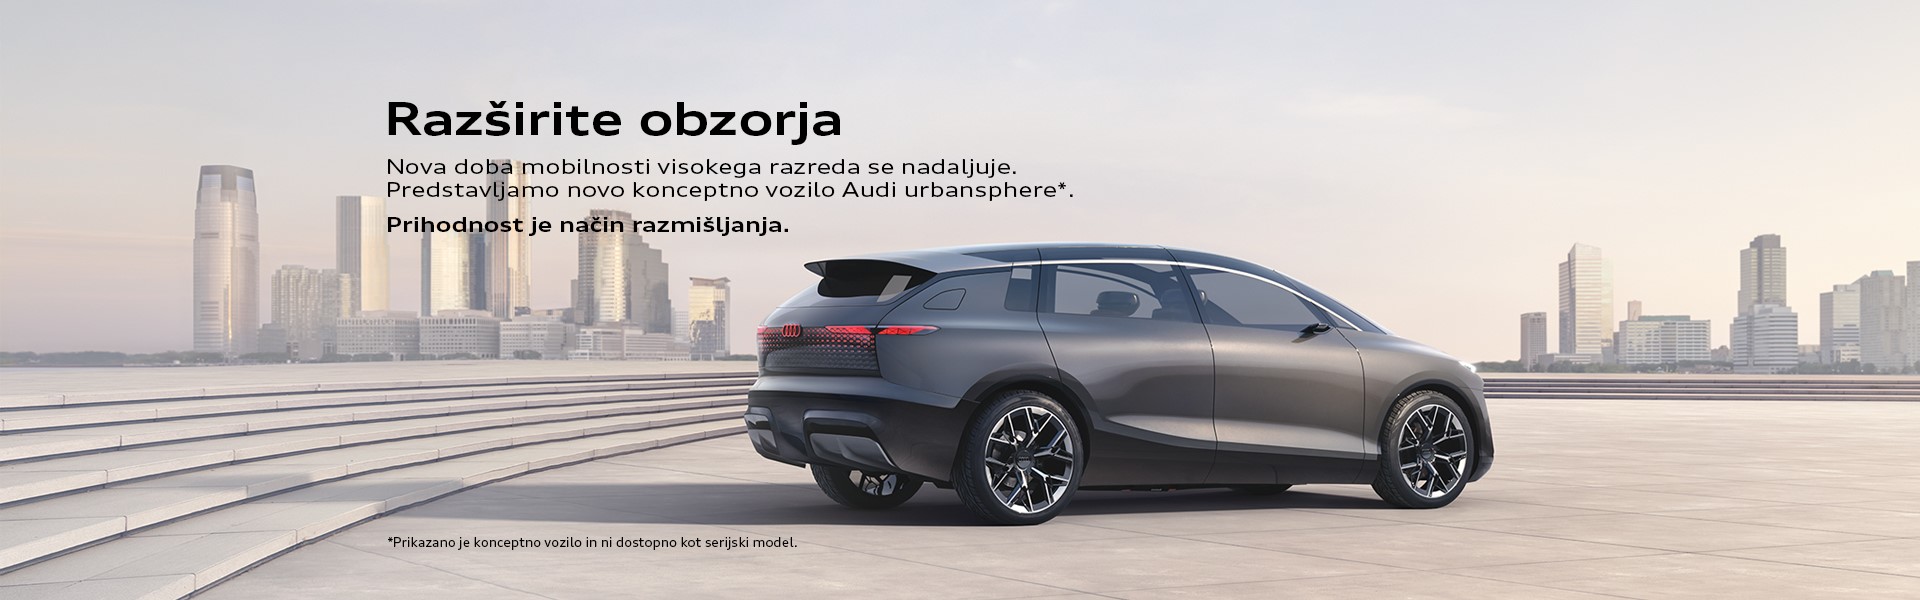 Konceptno vozilo Audi urbansphere